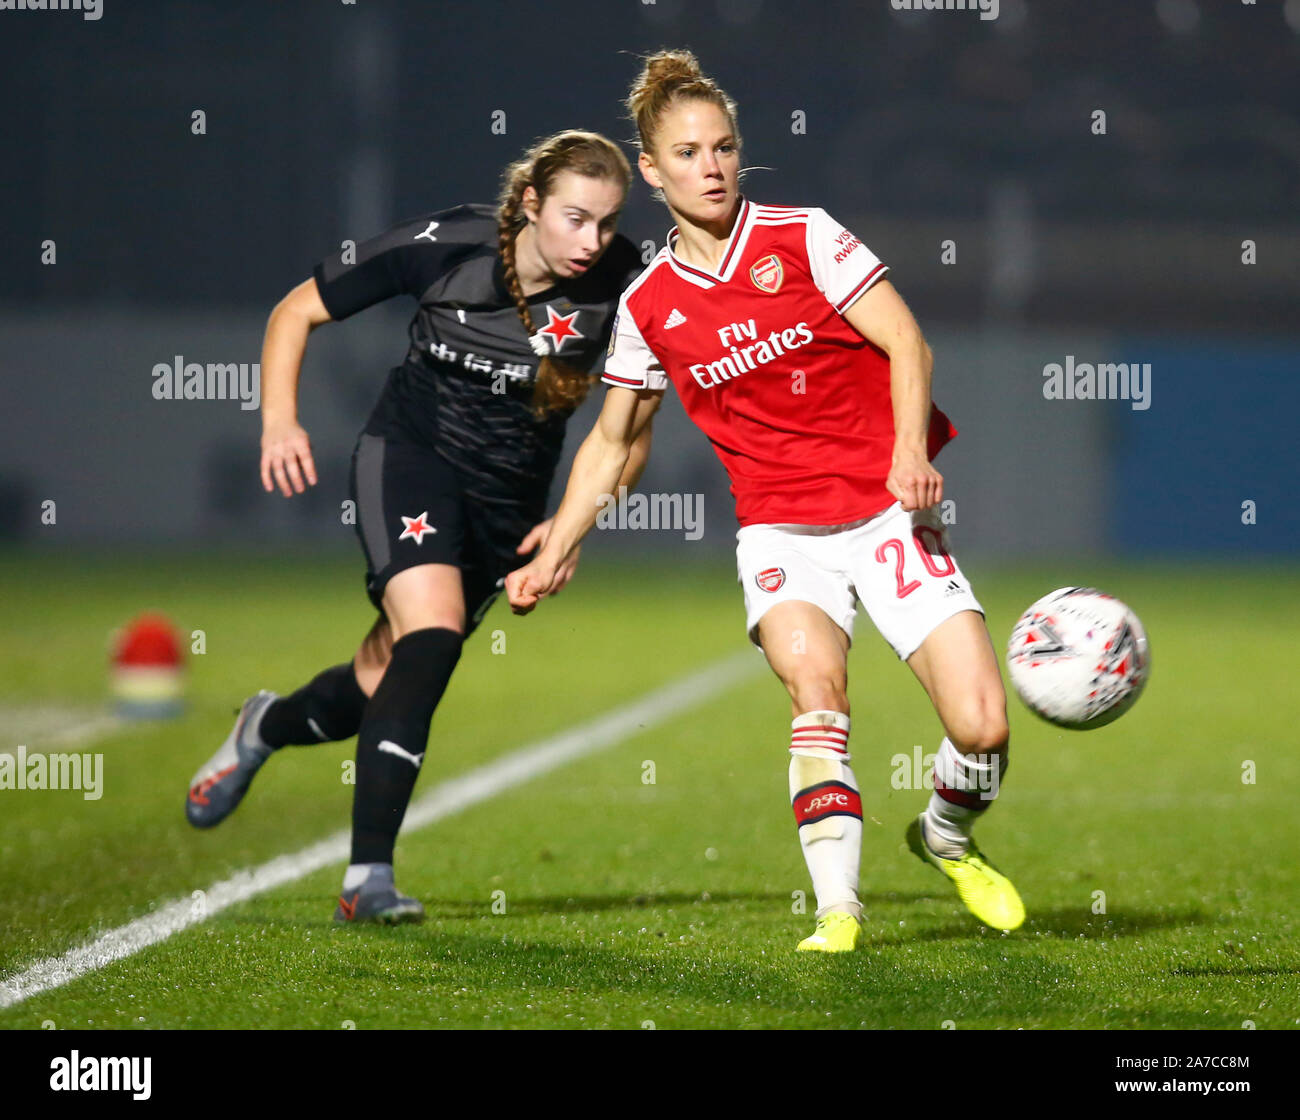 Portsmouth, England - 31. Oktober: Leonie Maier von Arsenal beats Laura Zemberyova von Slavia Praha Frauen während der Uefa Champions League Runde Stockfoto